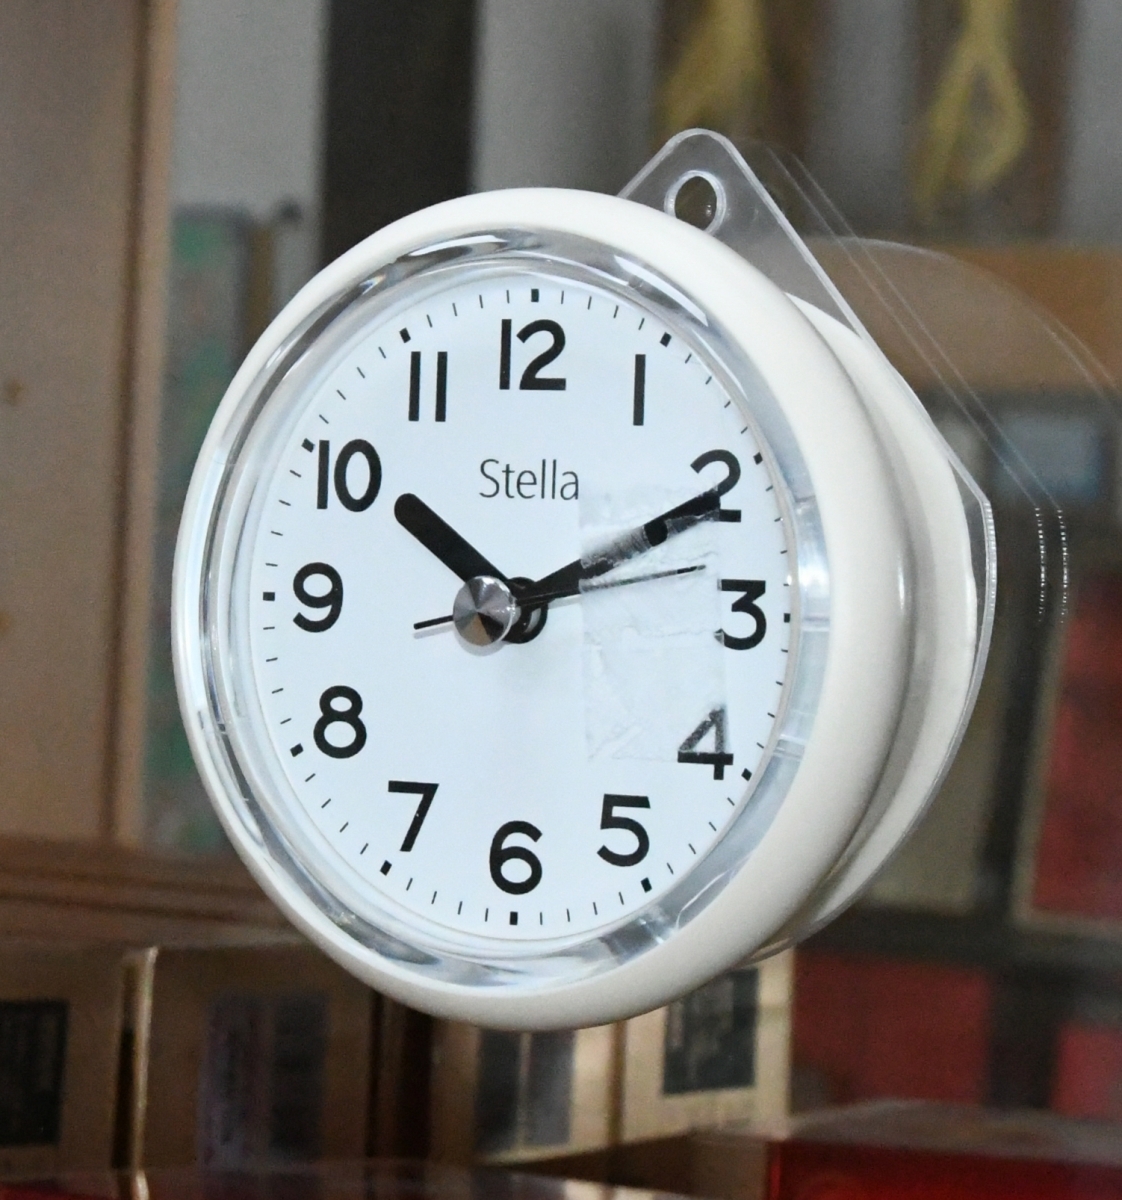 Настенные влагостойкие часы STELLA SHC-99Ivory